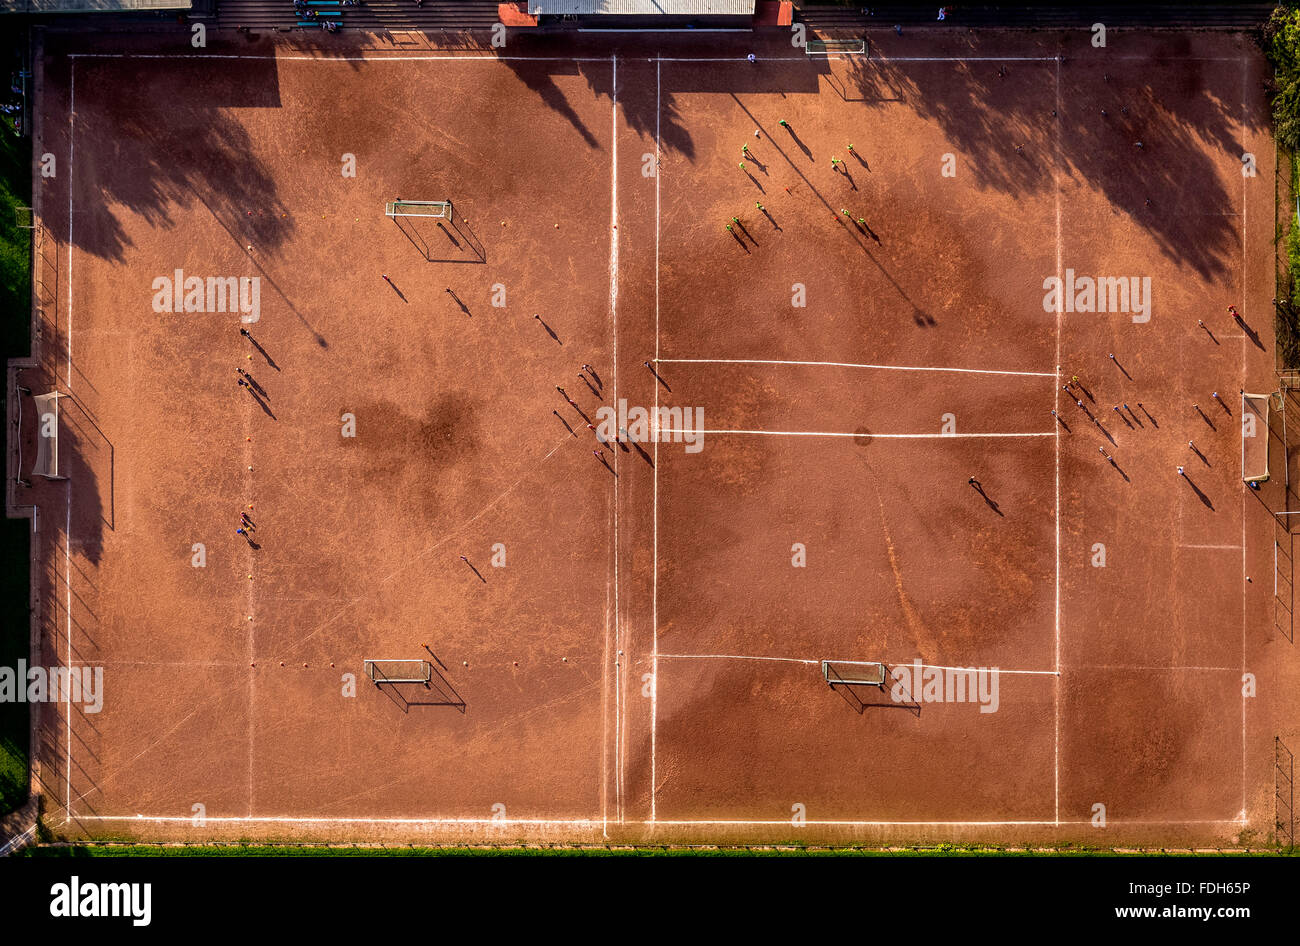 Vue aérienne de l'installation de sport, Börnig Börnig VfL à Herne dans la formation des jeunes, l'enregistrement perpendiculaire, terrain de football, de l'argile, cour Banque D'Images